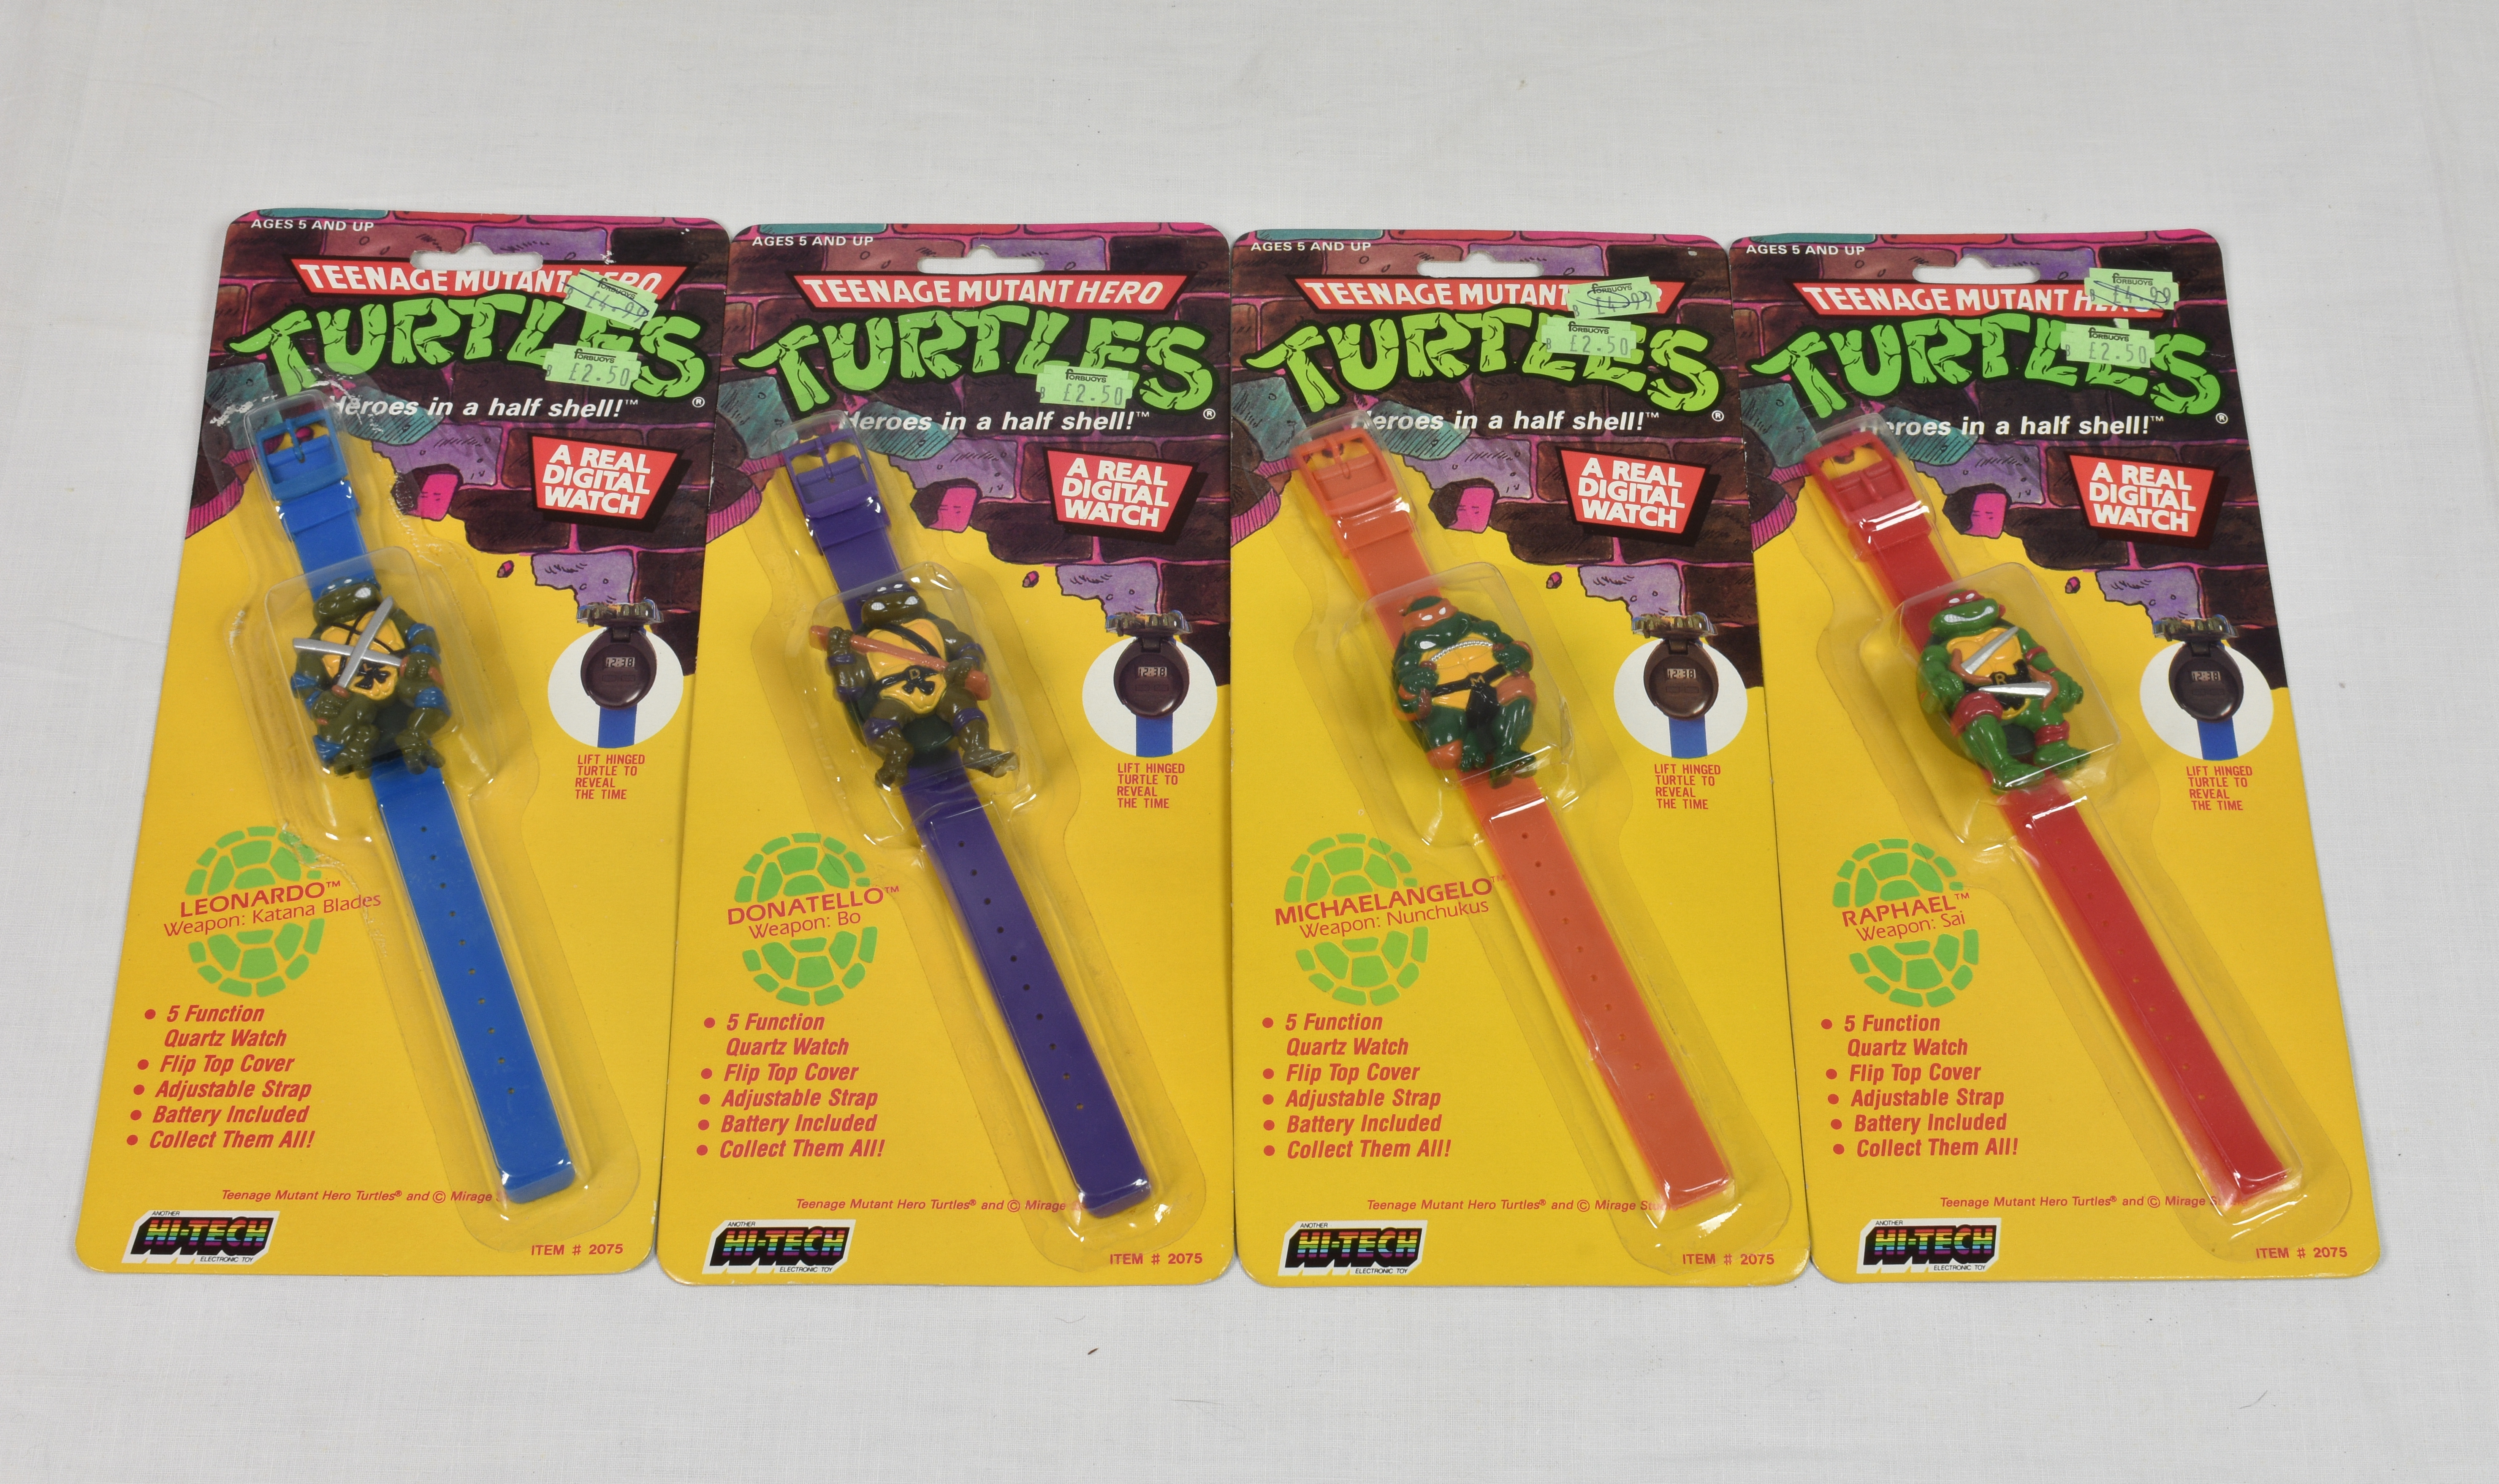 A full set of four vintage Teenage Mutant Hero Turtles wrist watches in original packaging by Hi-